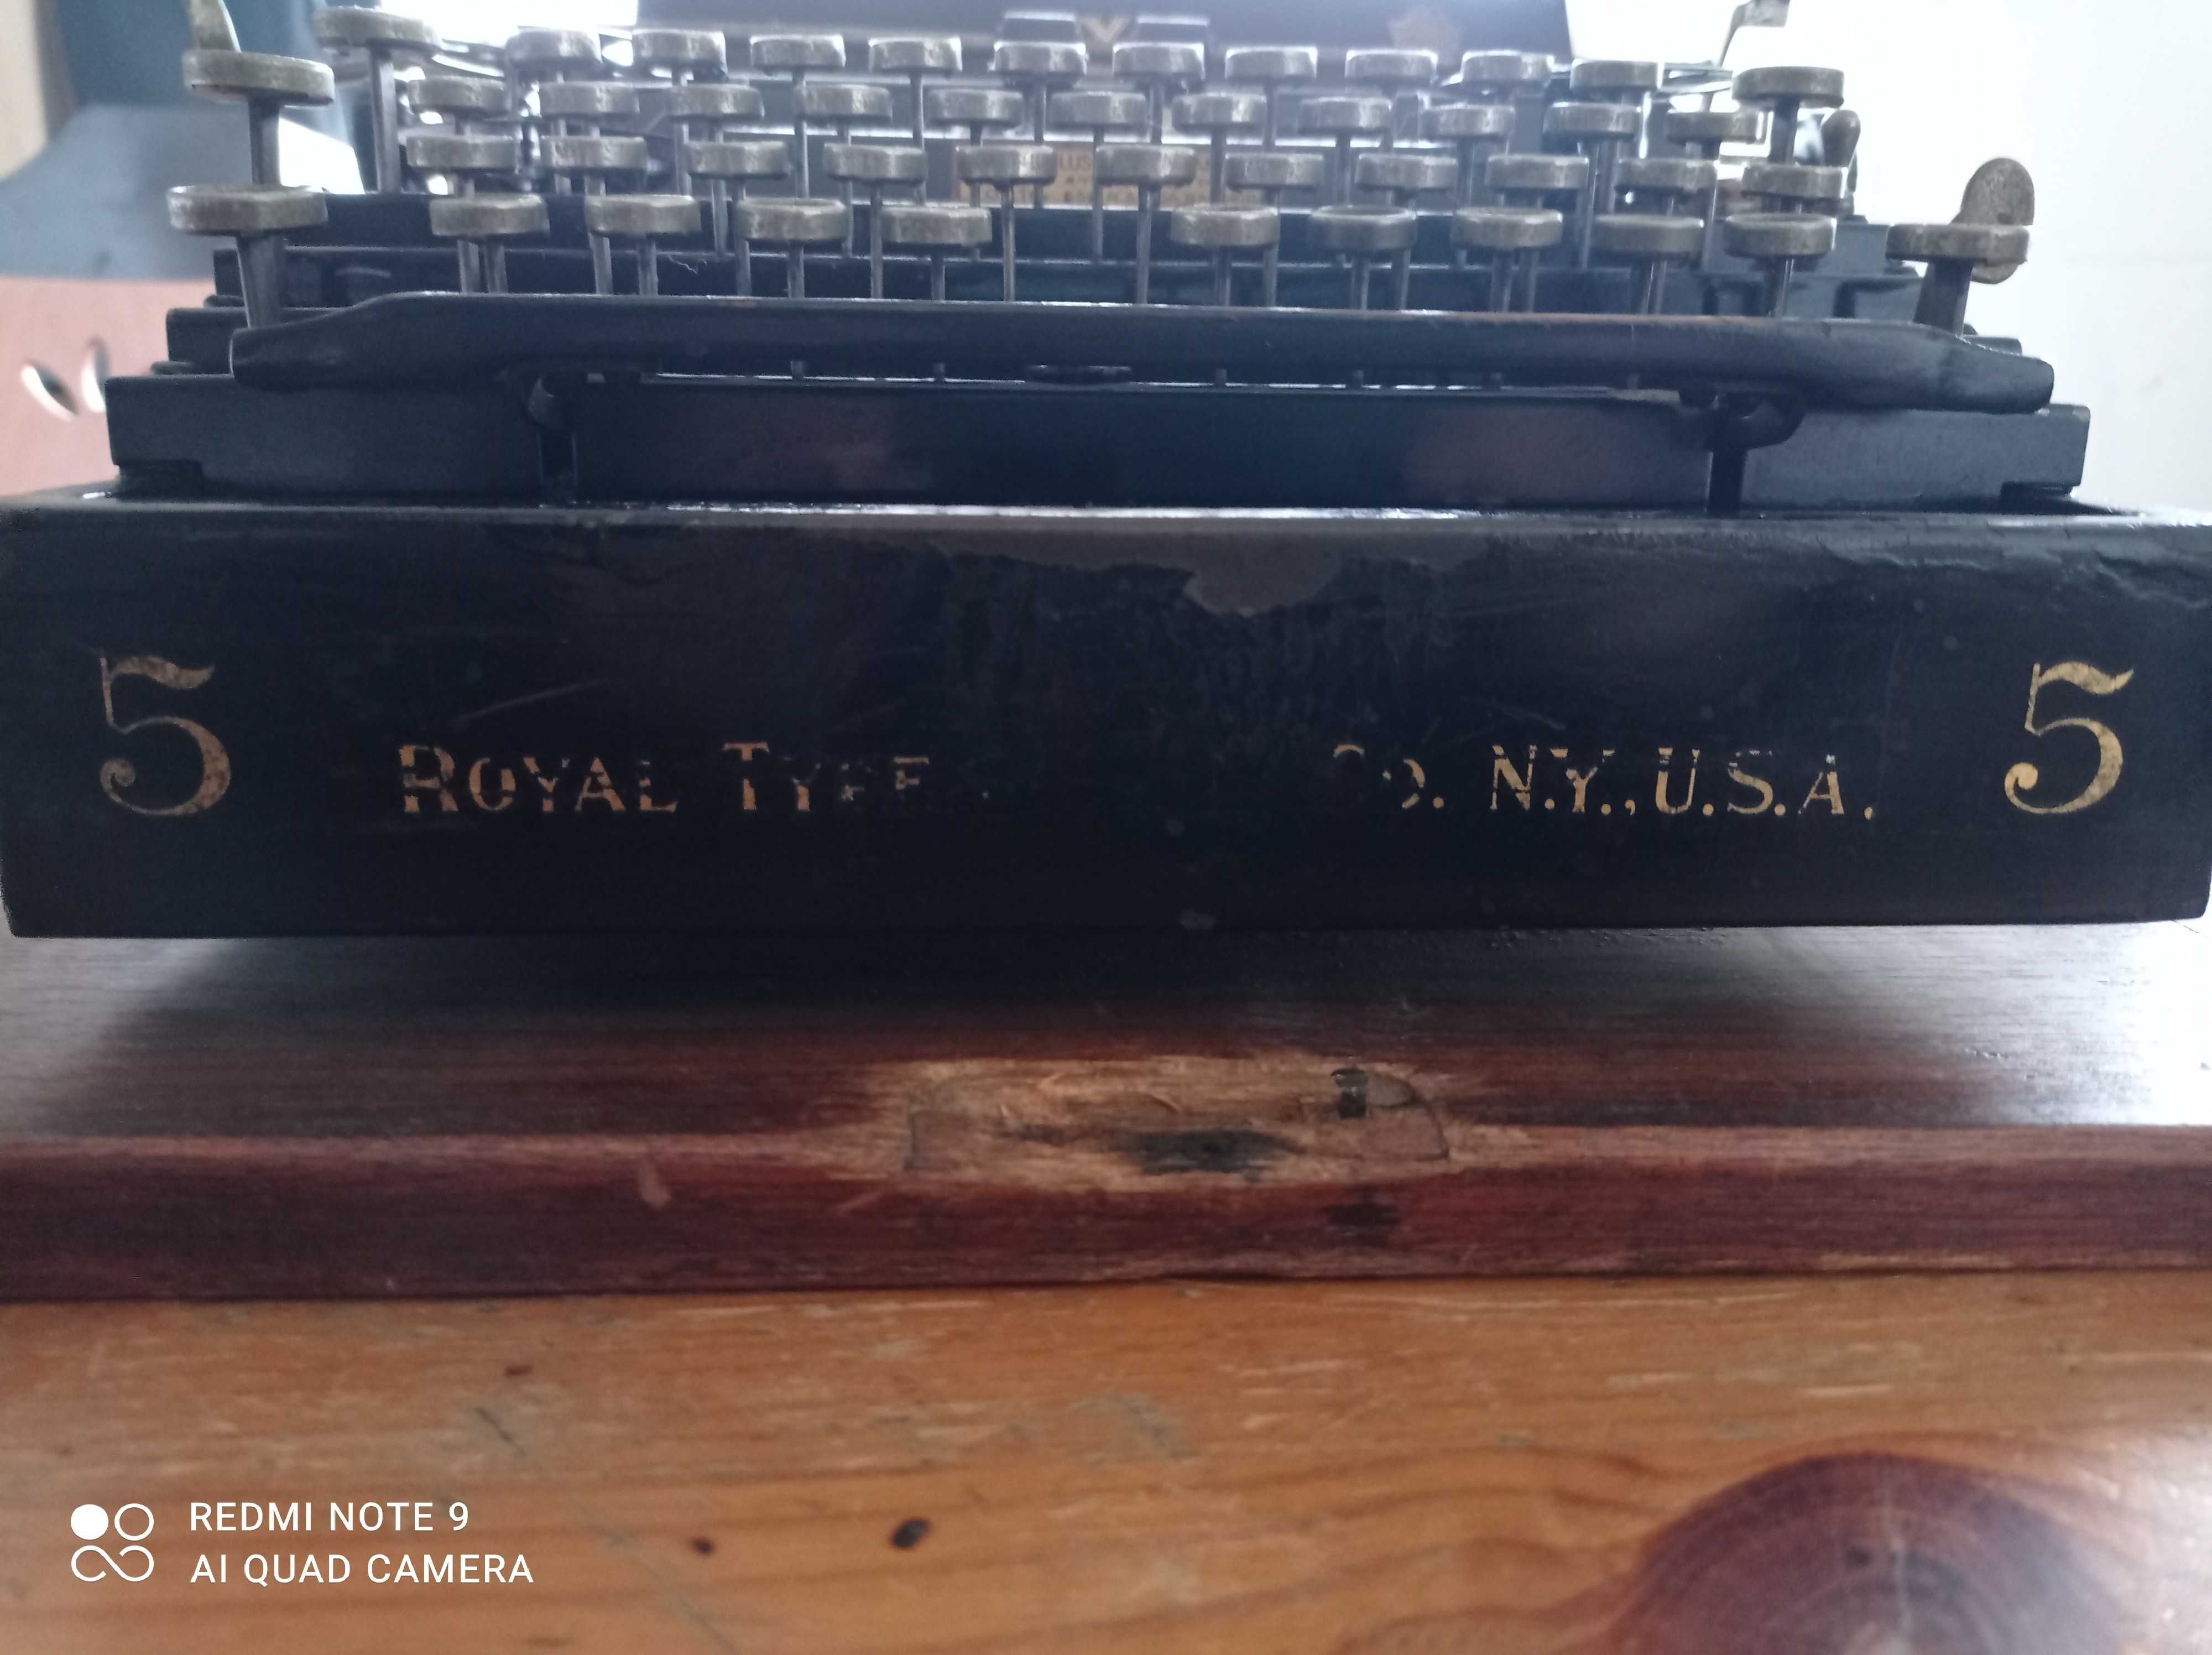 Máquina de escrever Royal
Type  5  New York USA